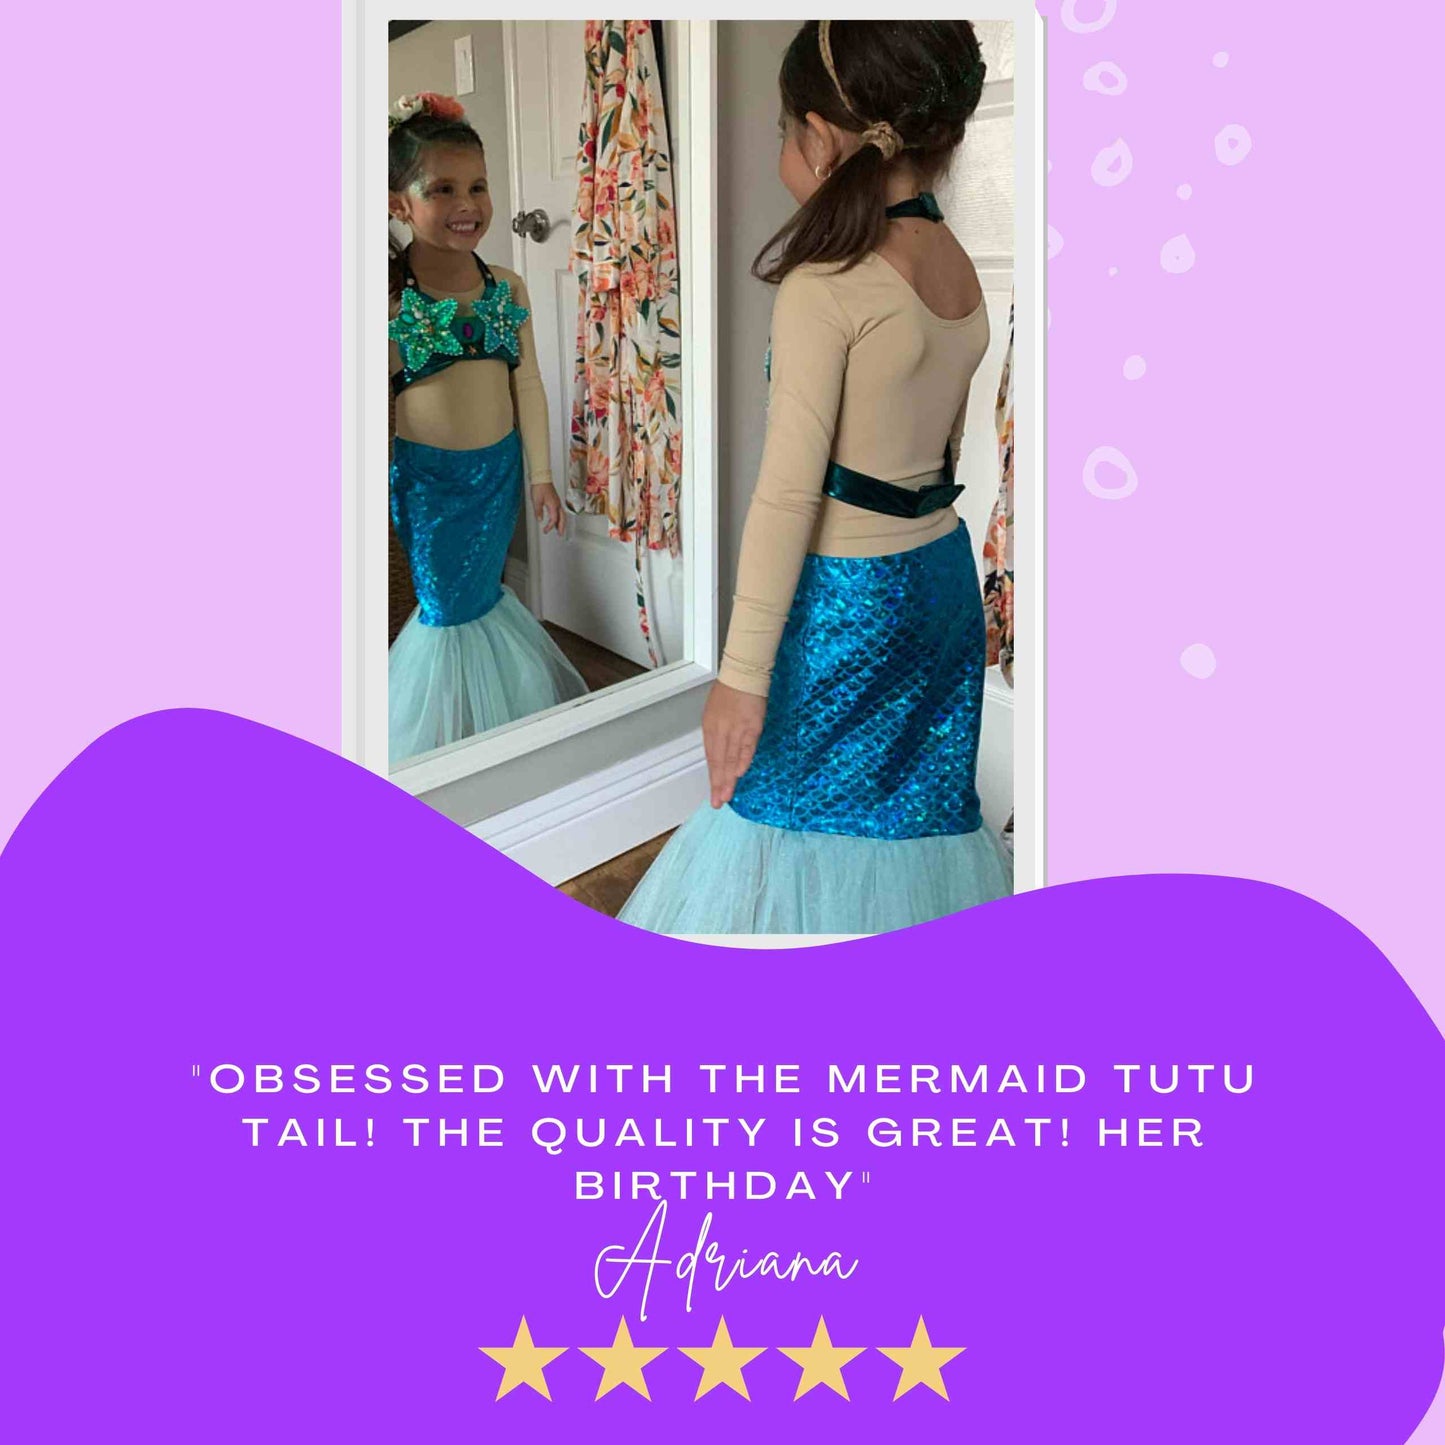 Mermaid Skirt & Crown Set - Purple